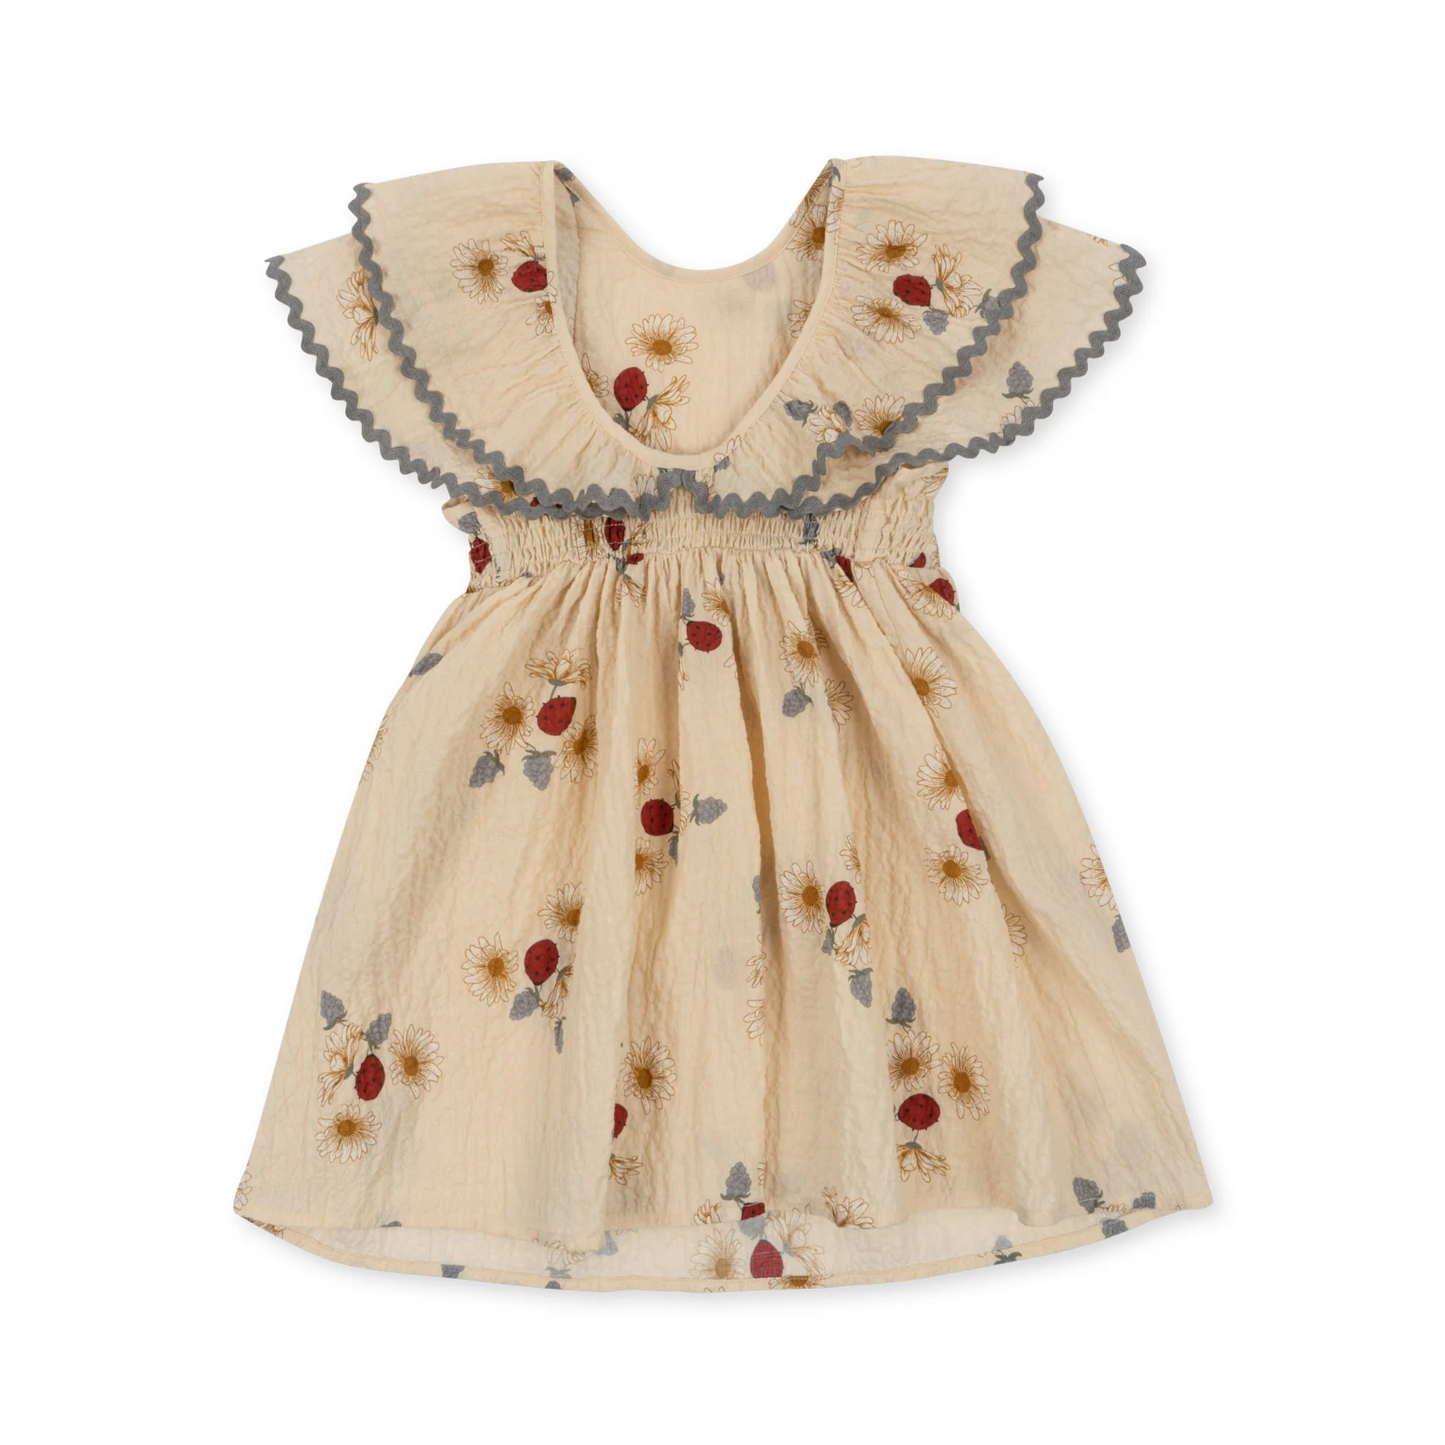 Elin Dress - Ladybug (18M Only)